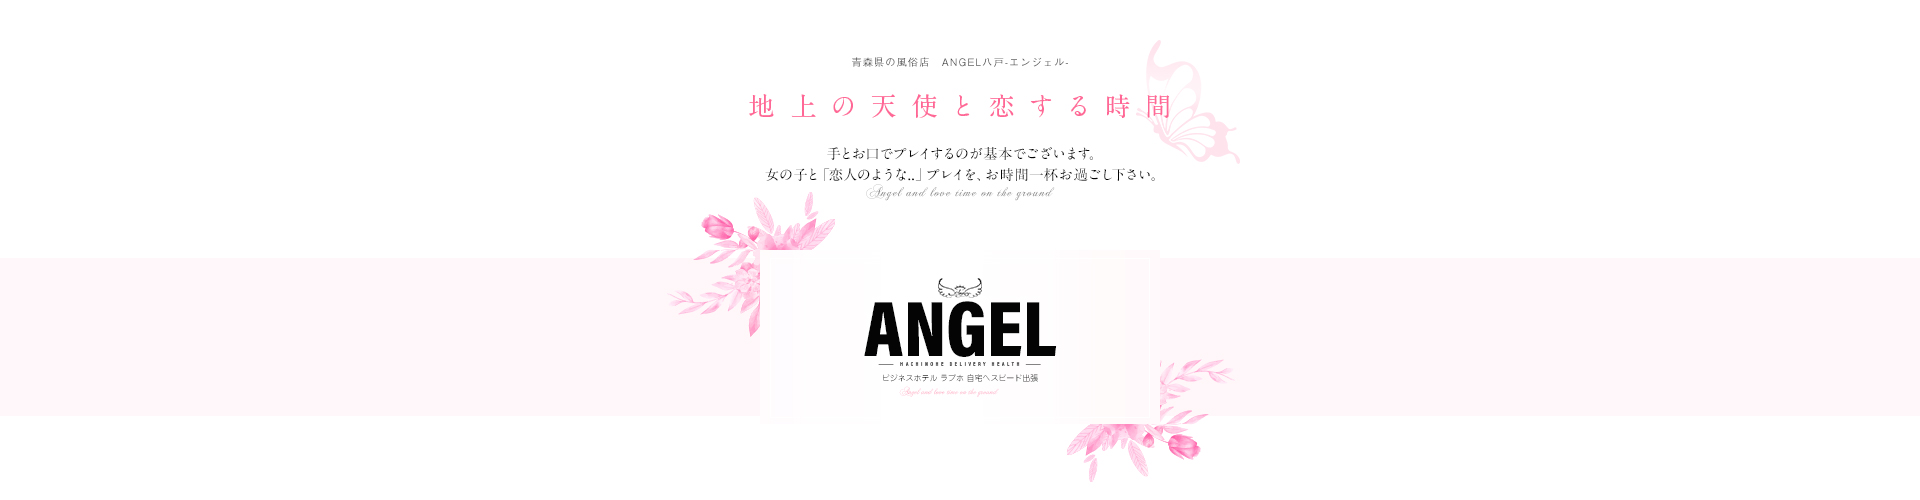 ANGEL-GWF-